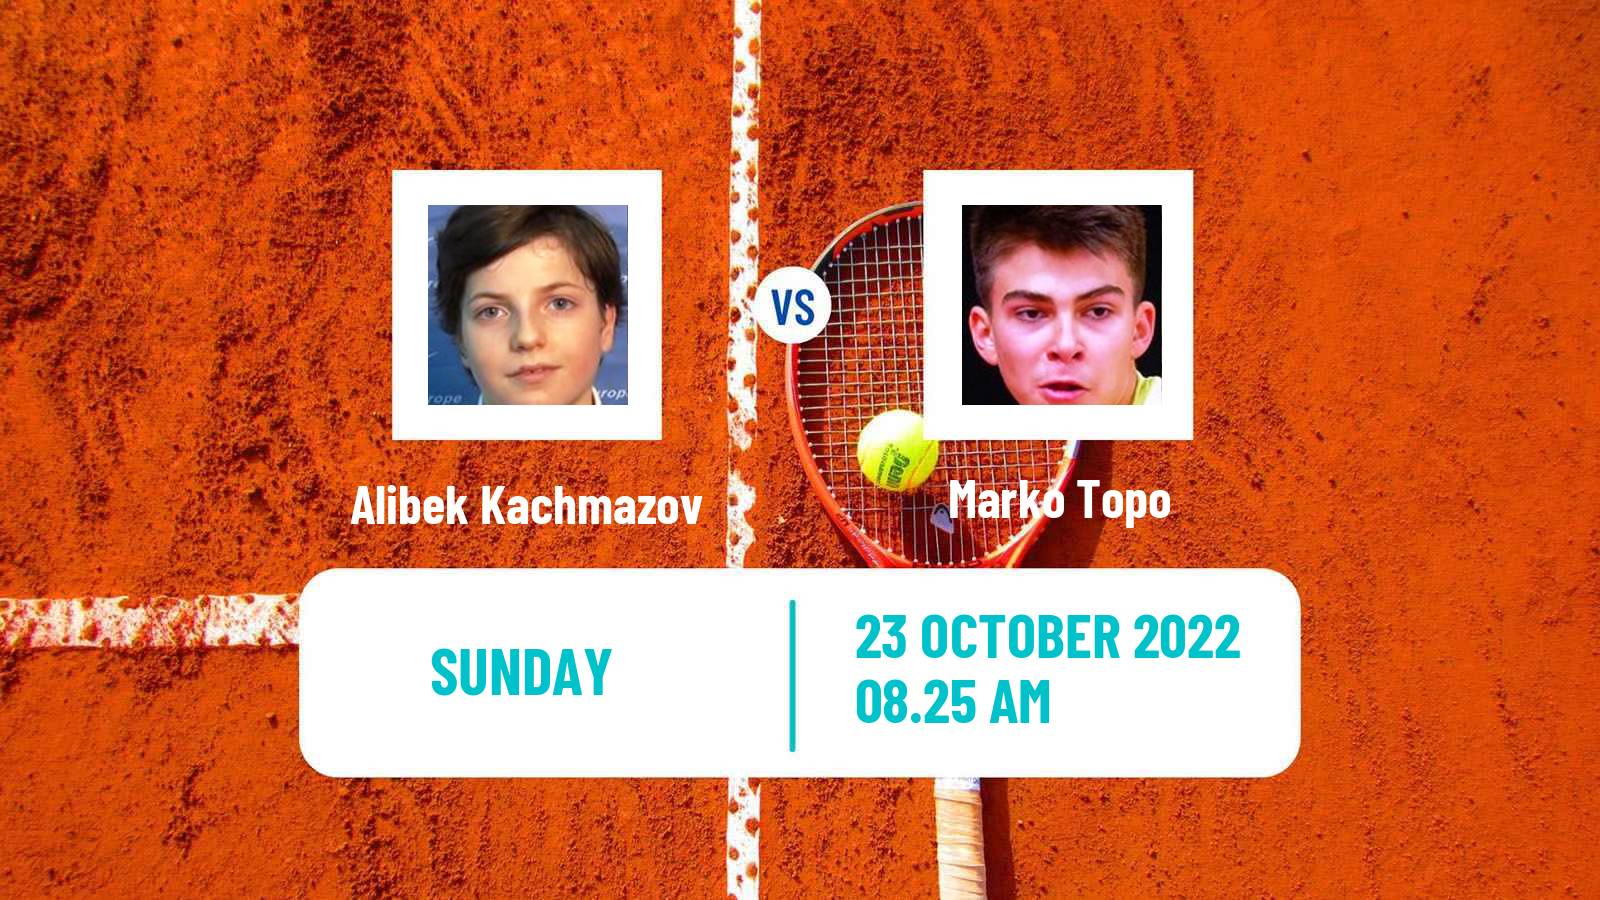 Tennis ATP Challenger Alibek Kachmazov - Marko Topo